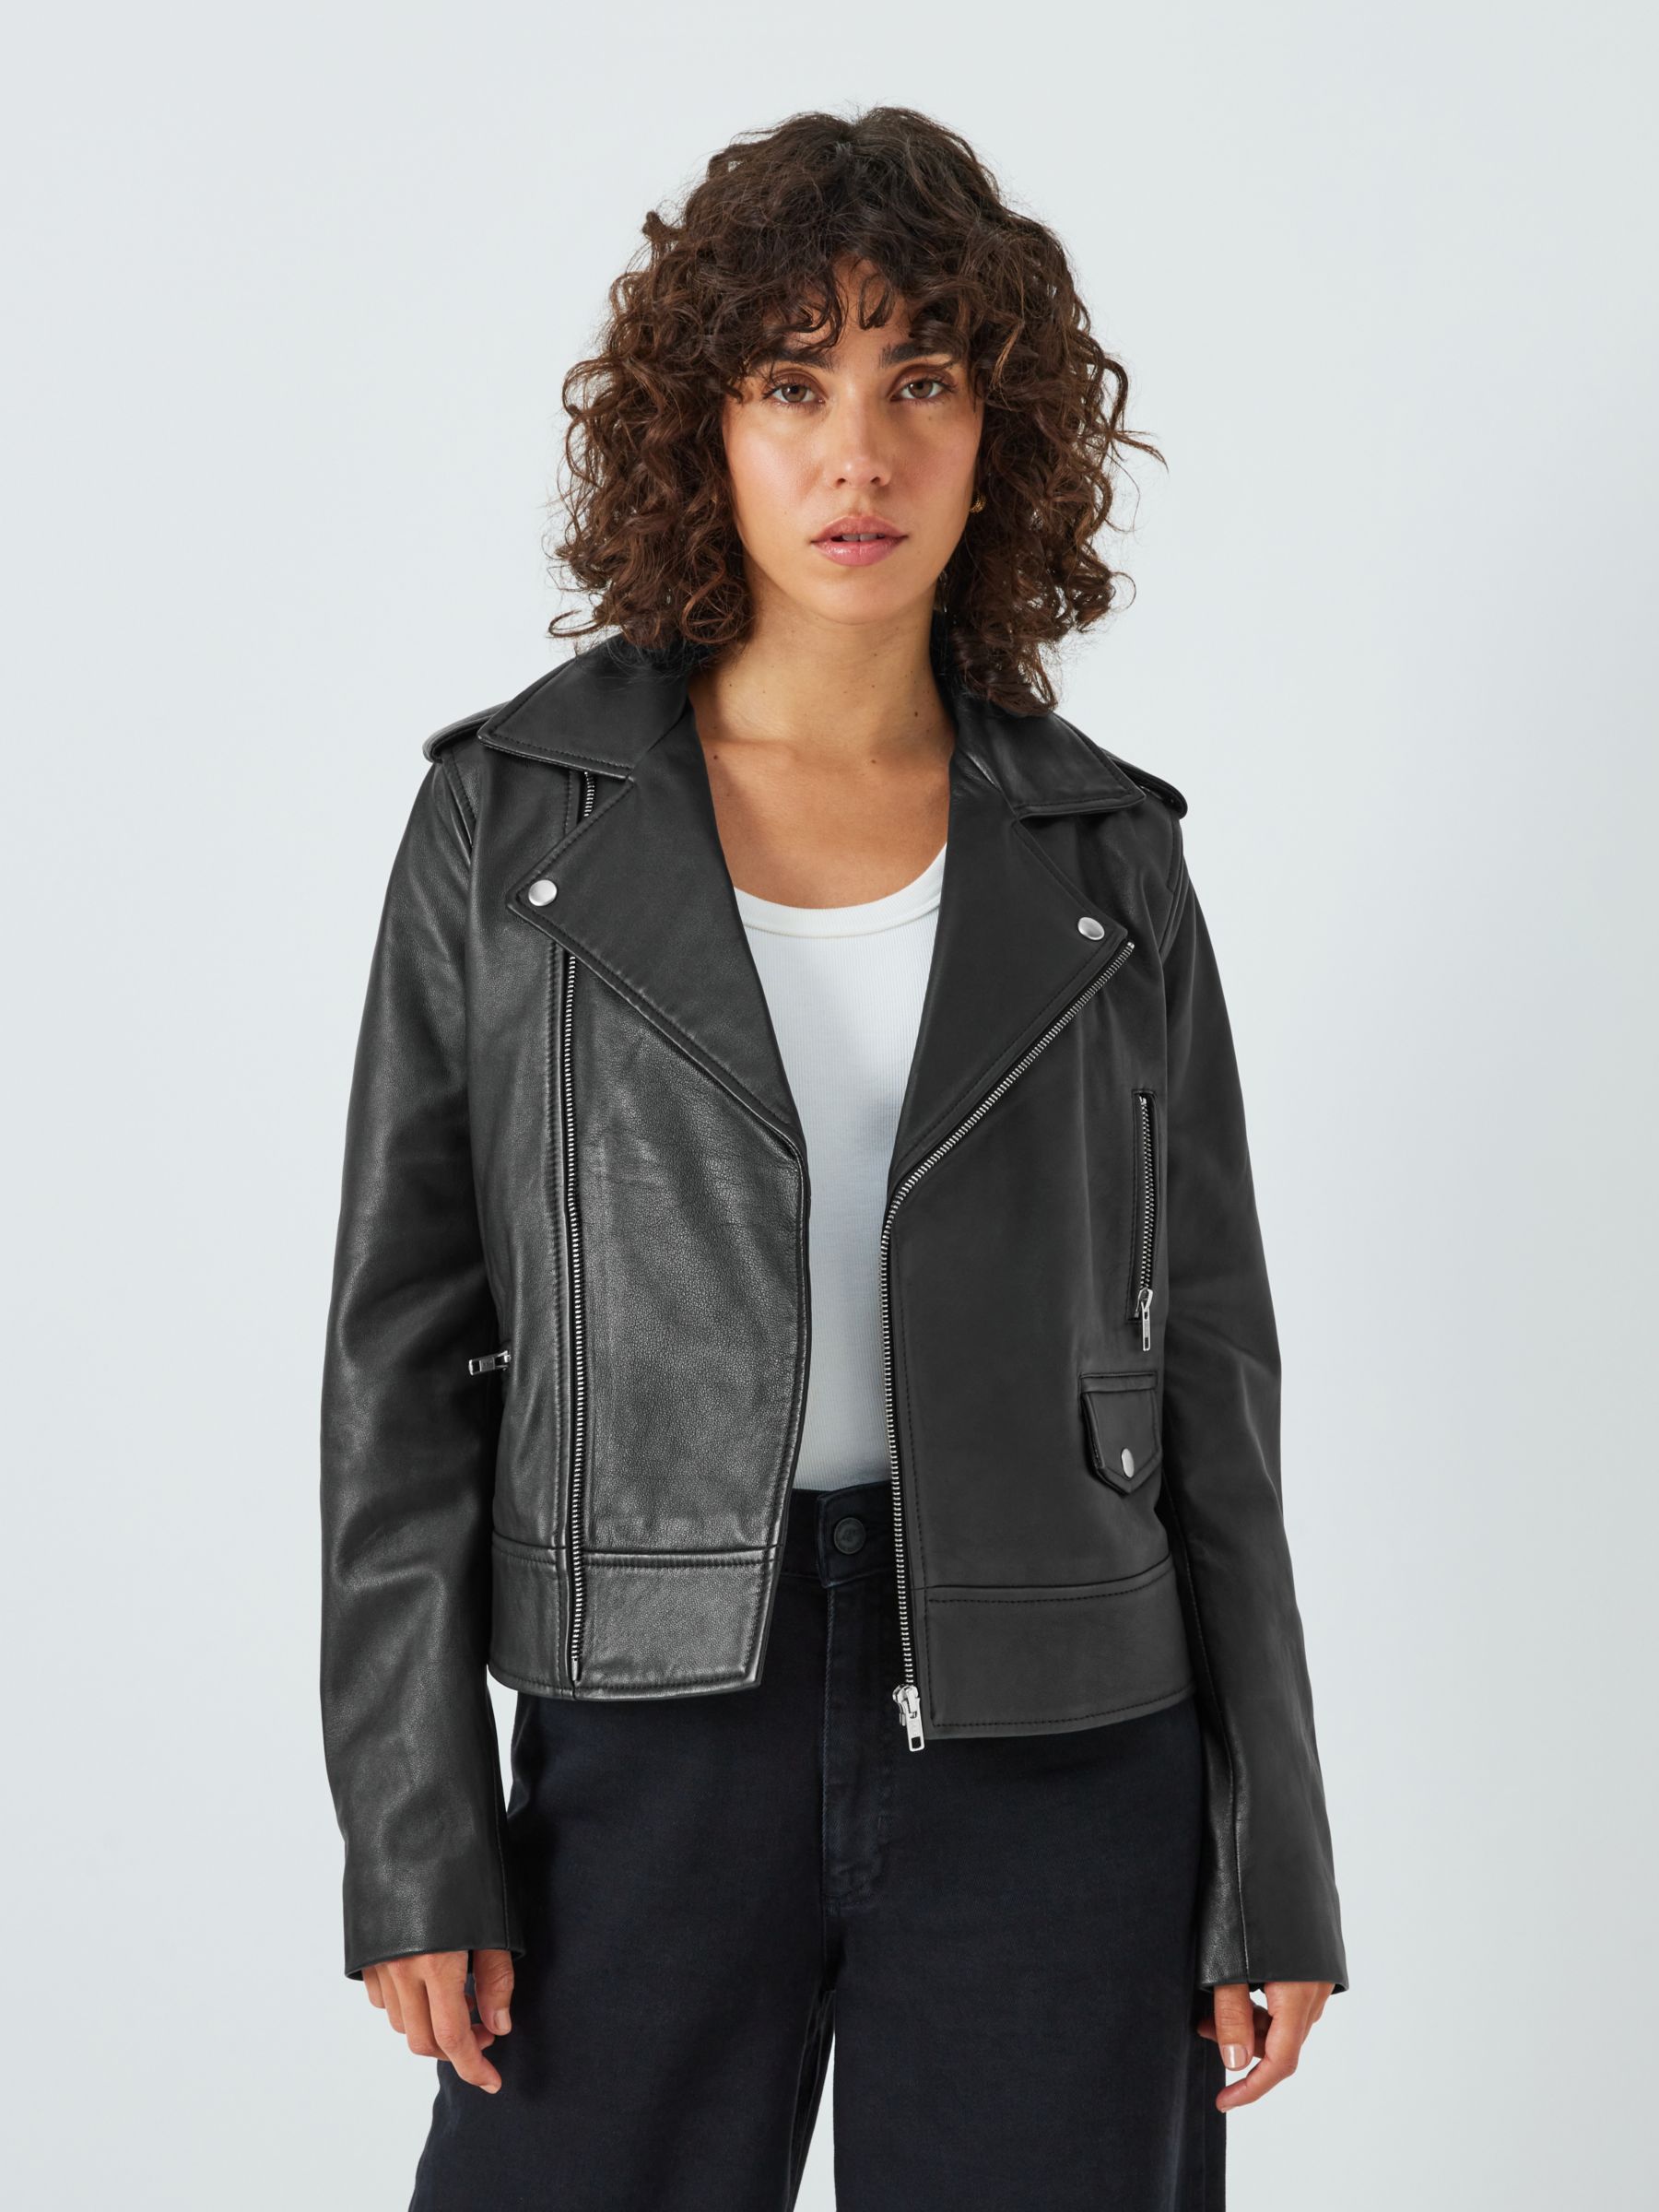 Cropped Black Leather Jacket | John Lewis & Partners